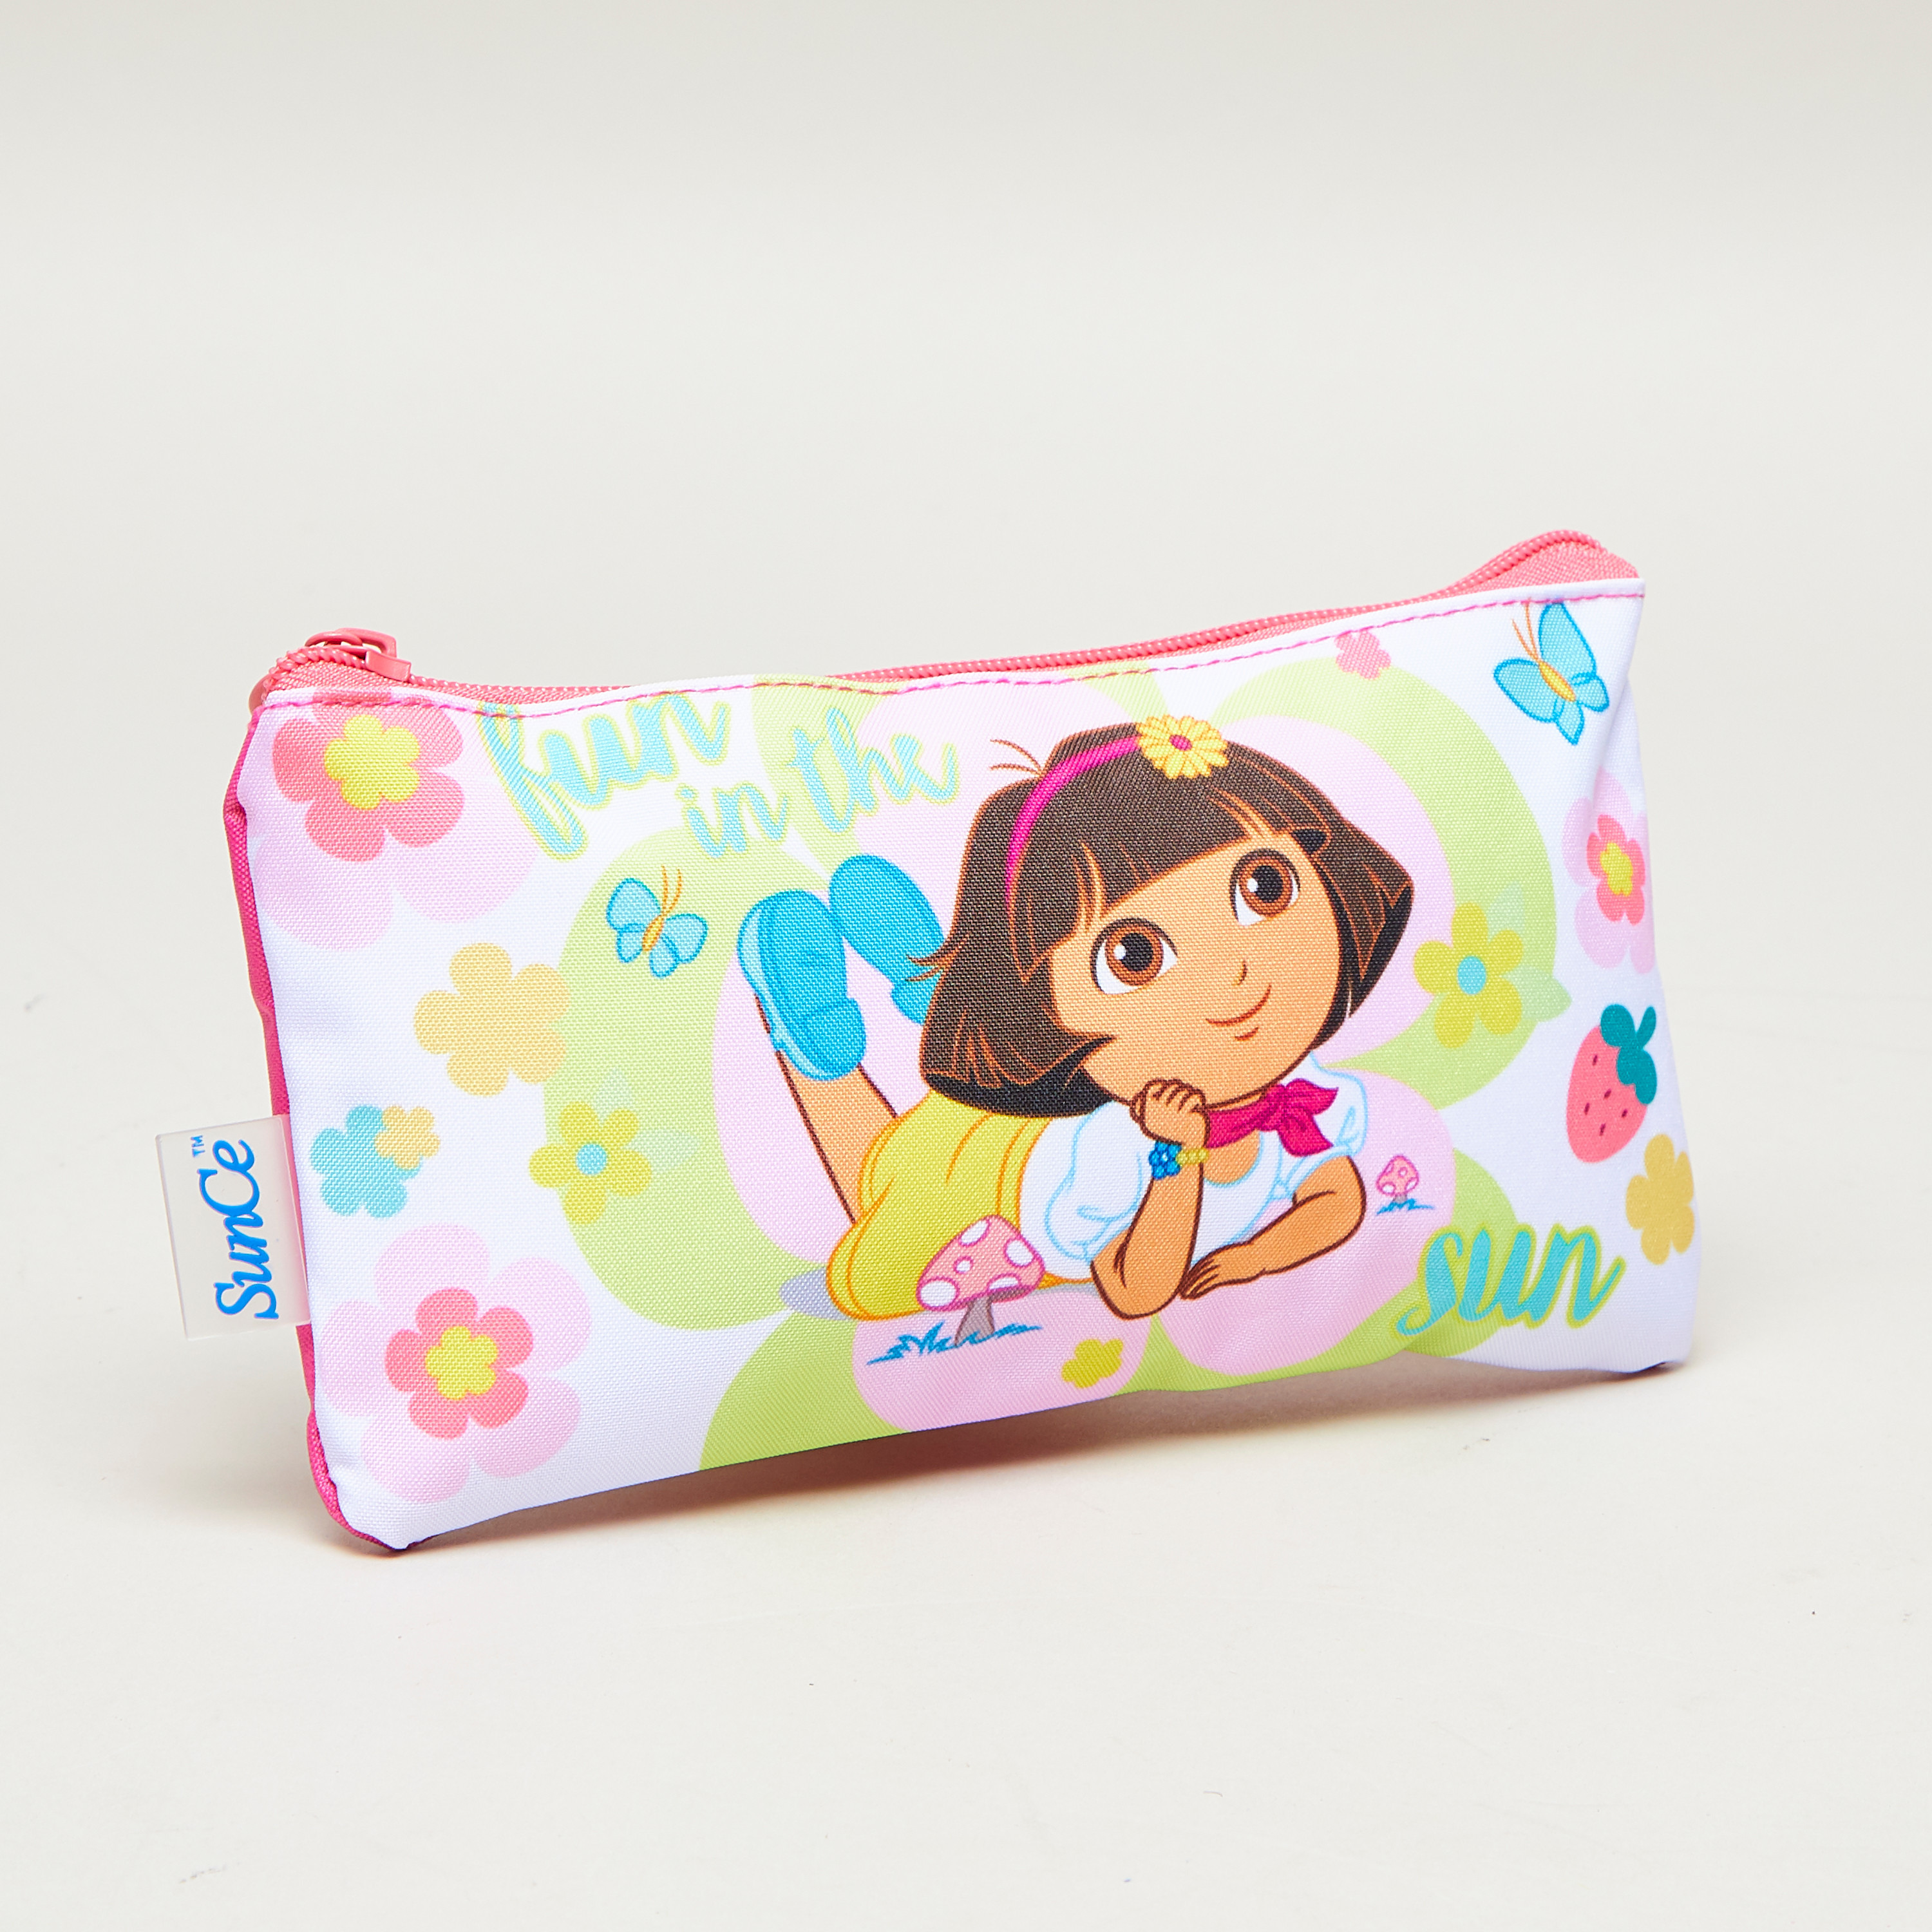 Handbag - Dora the Explorer - Dora Love Music New Hand Bag Purse Girls  de21478 - Walmart.com